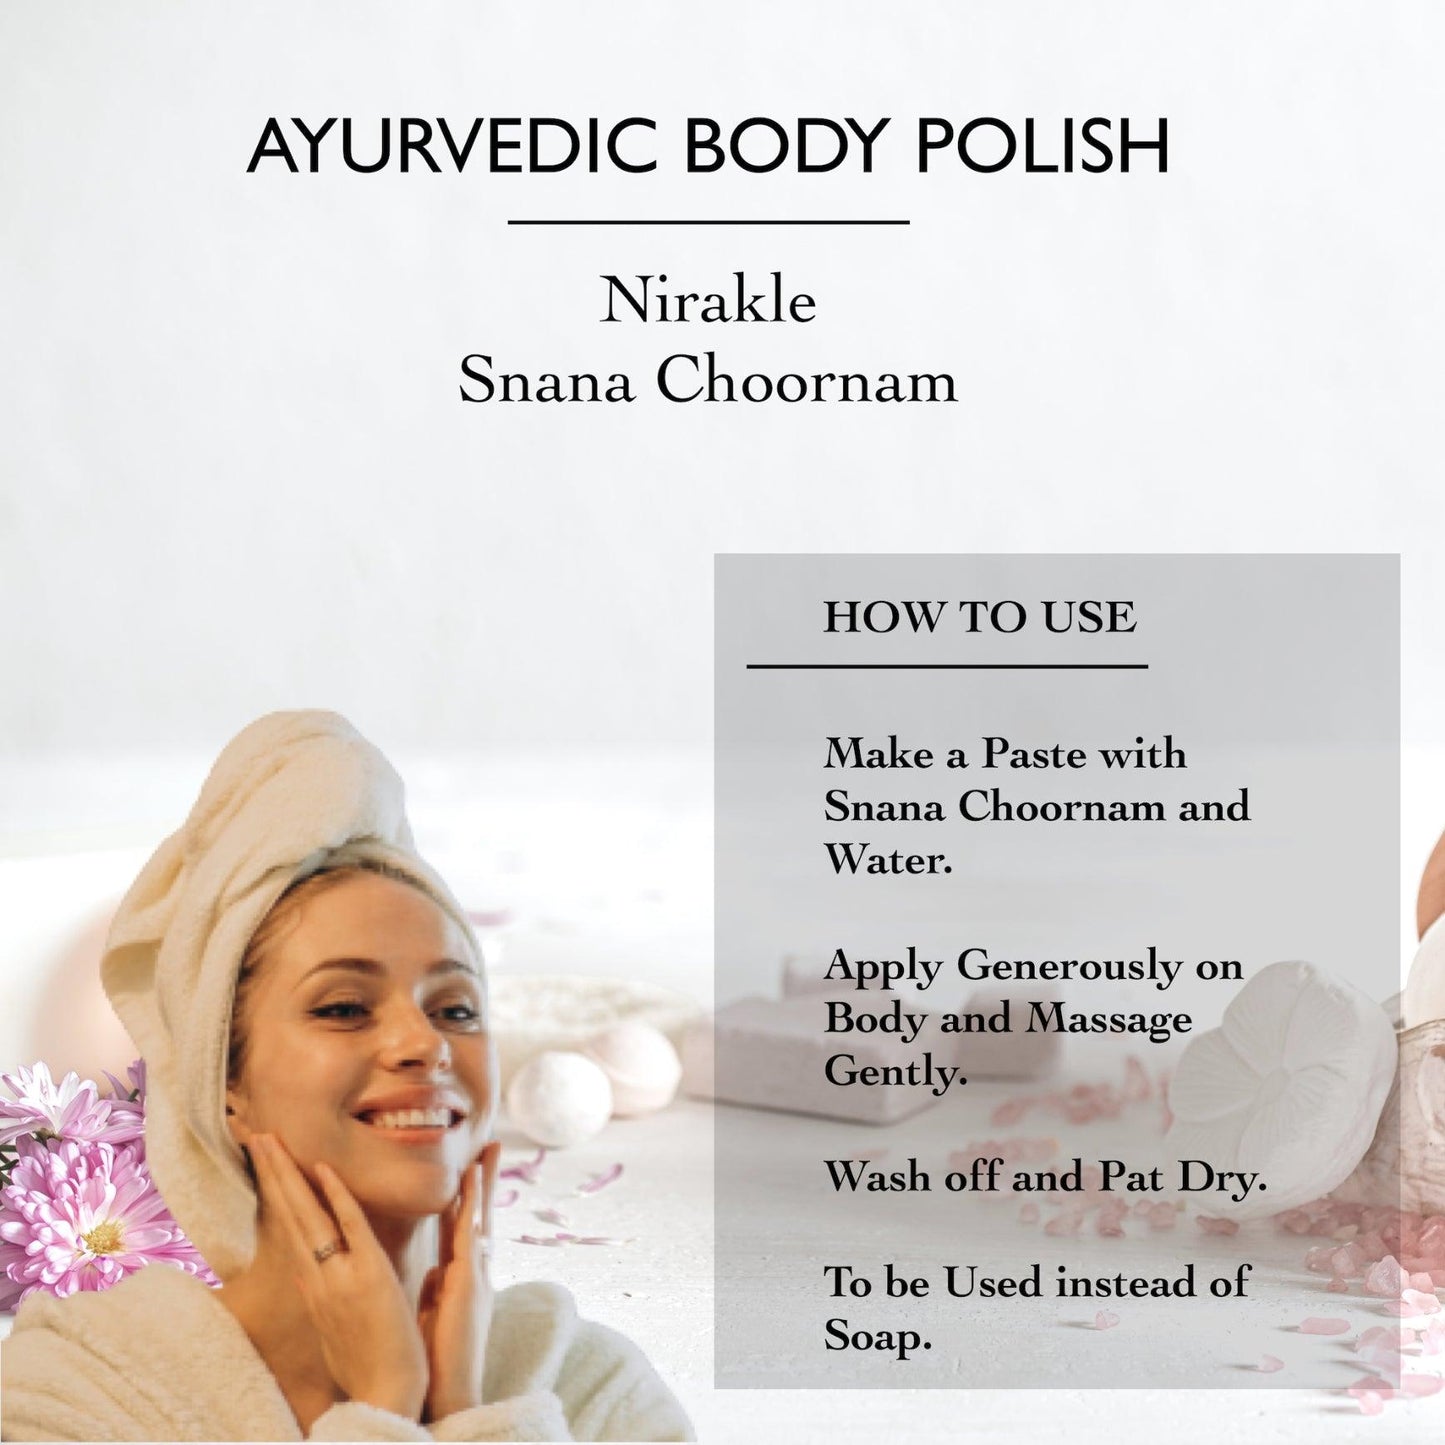 Ayurvedic Body Scrub | Nirakle Snana Choornam - Nirakle